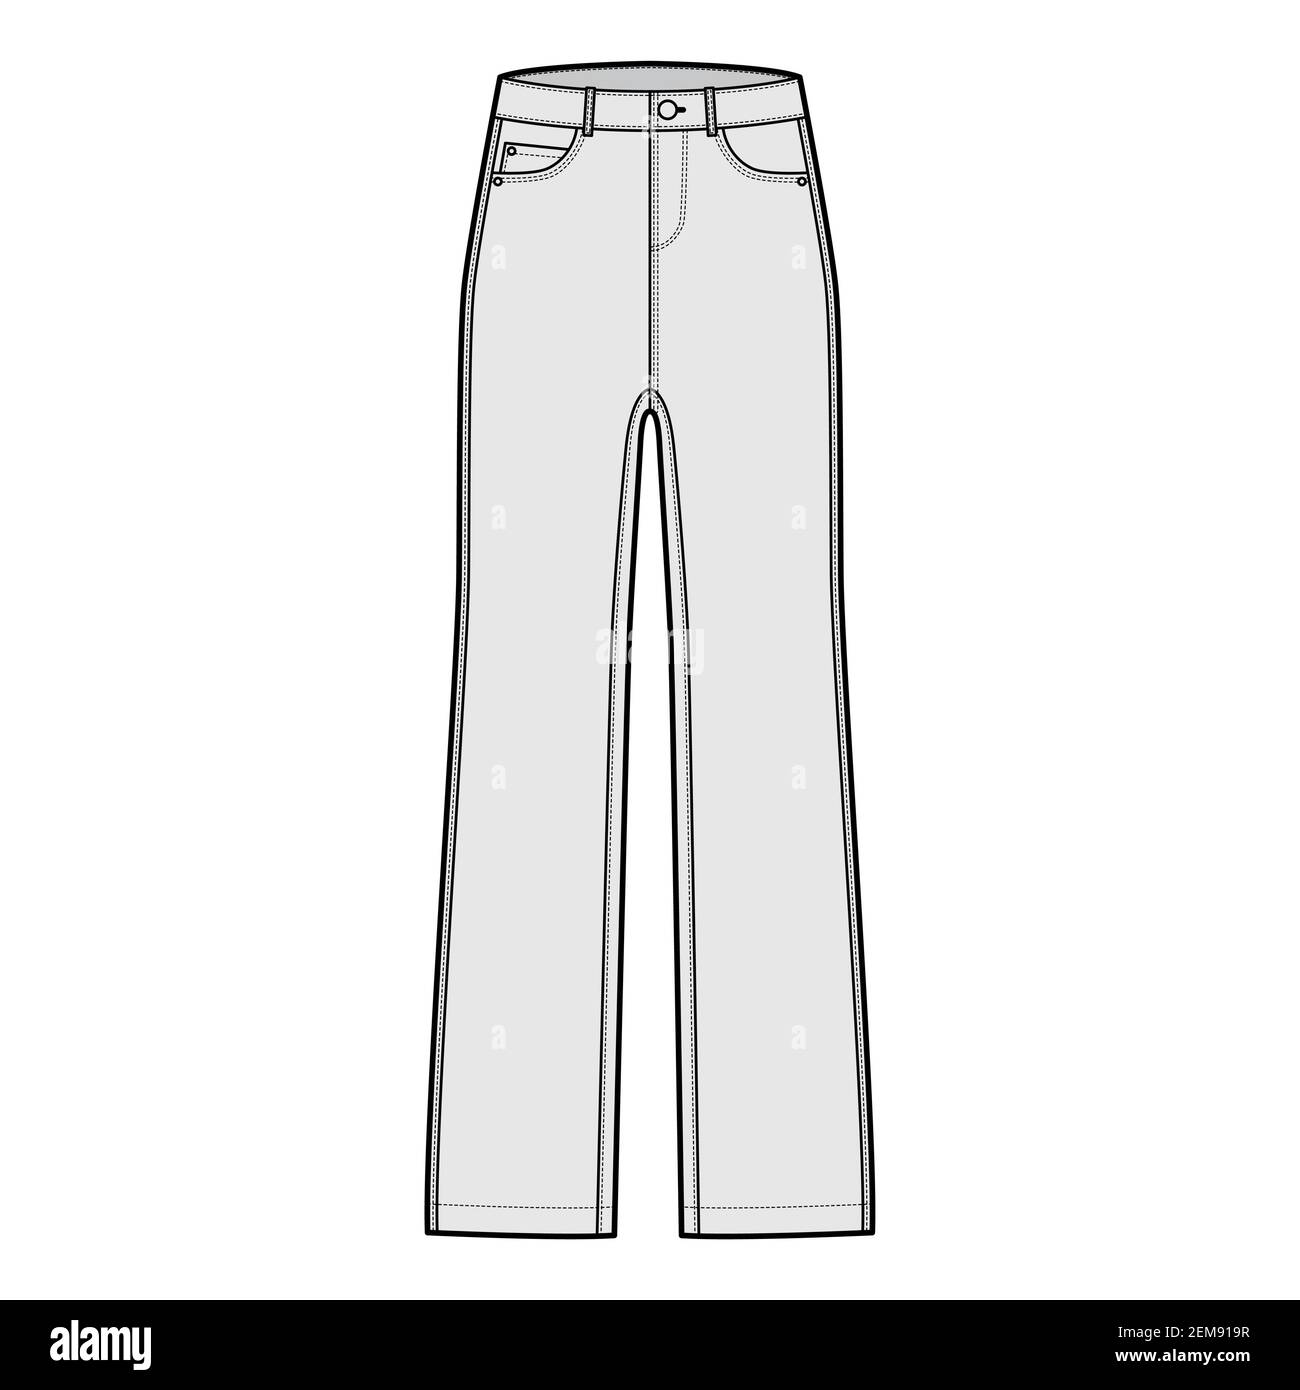 Jeans pantalons denim technique mode illustration avec longueur, taille  basse, taille, 5 poches, rivets, boucles de ceinture. Modèle de vêtement à  fond plat sur le devant, de couleur grise. Femmes, hommes, maquette